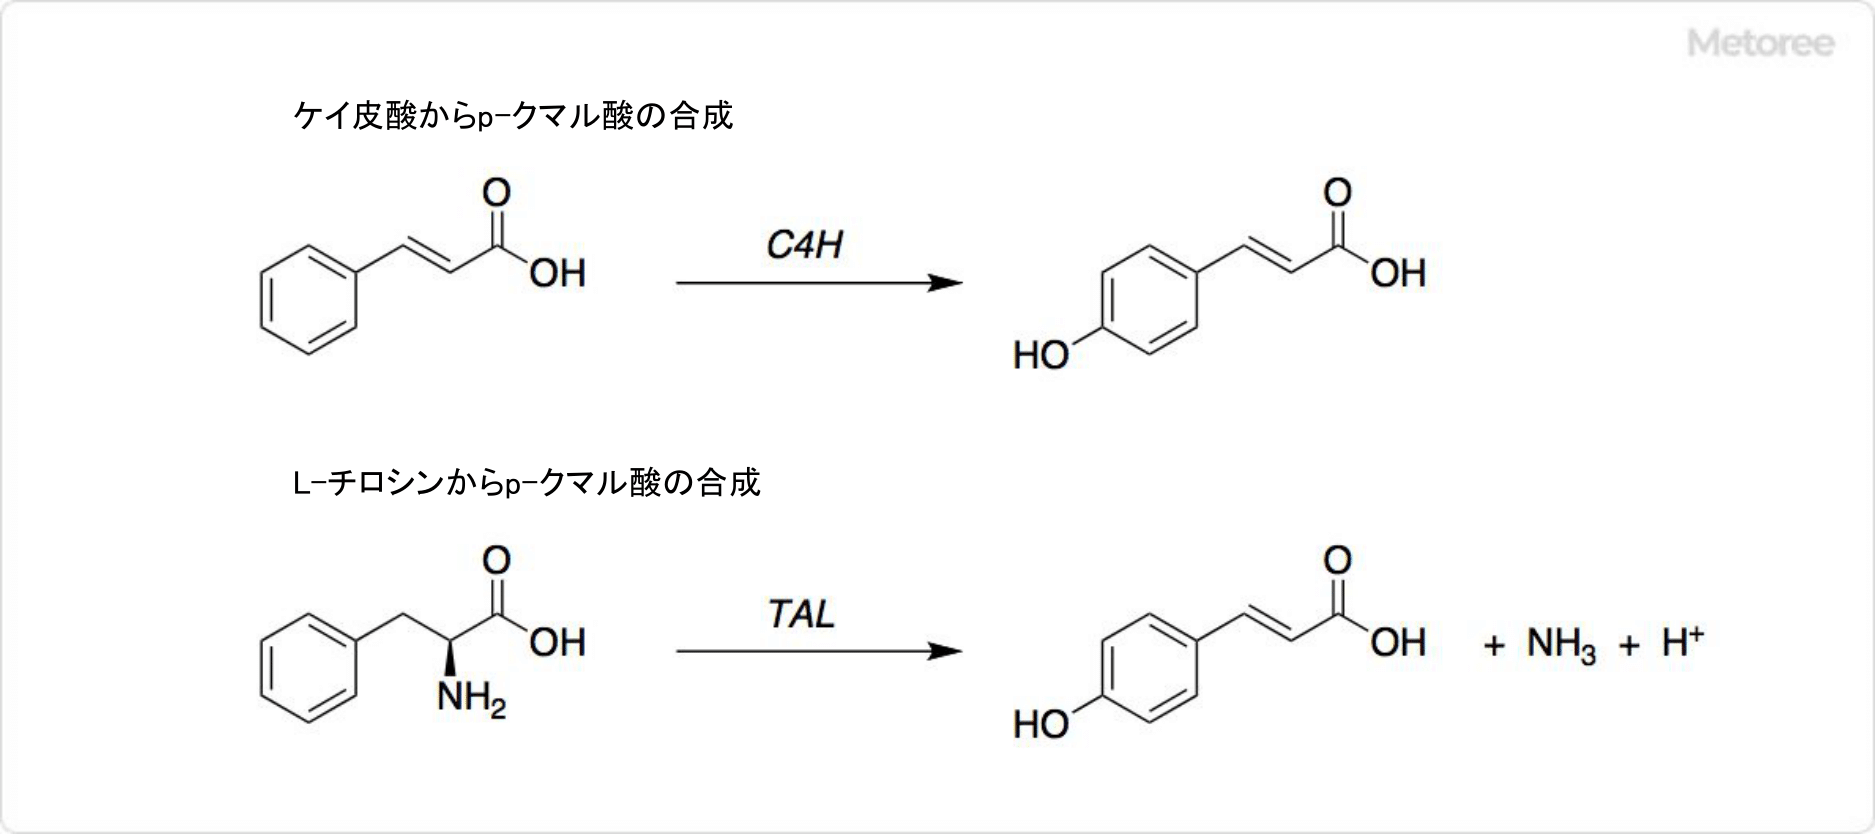 p-クマル酸の合成